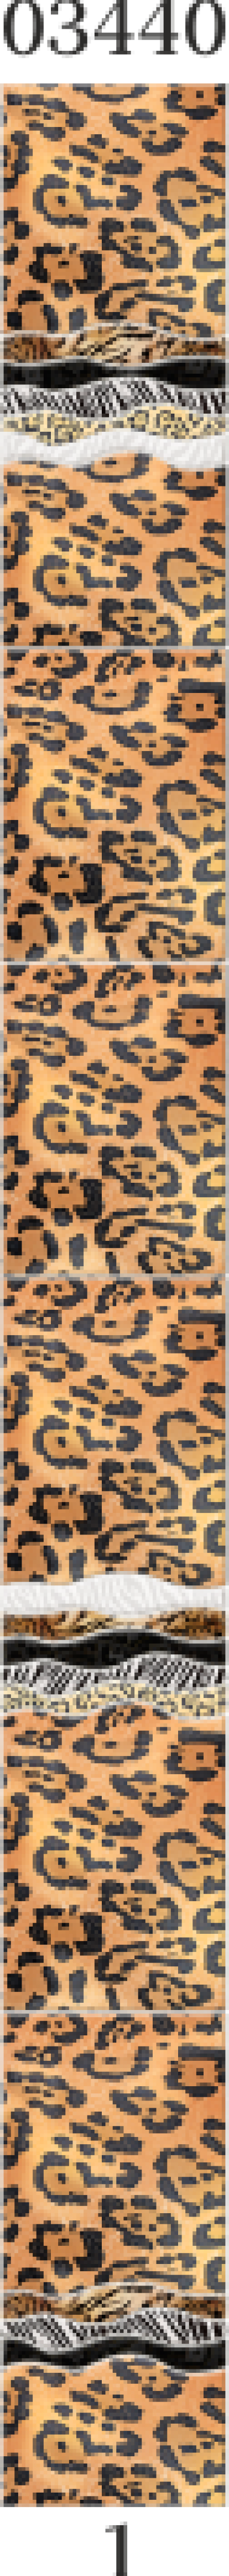 Изображение Стеновые панели ПВХ Леопард 03440 фон 